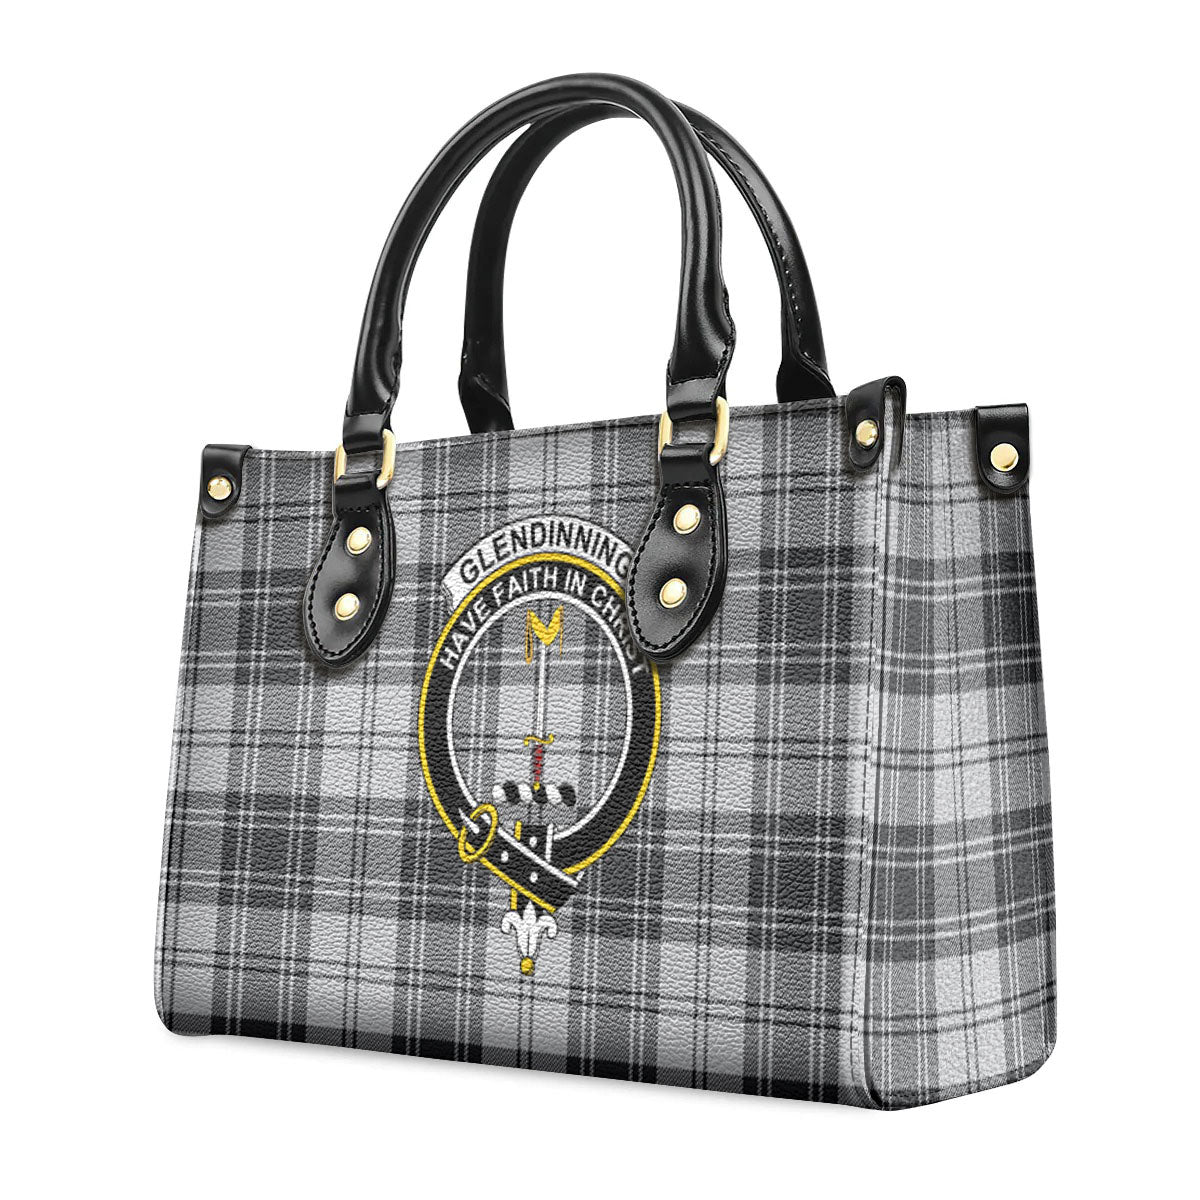 Glendinning Tartan Crest Leather Handbag